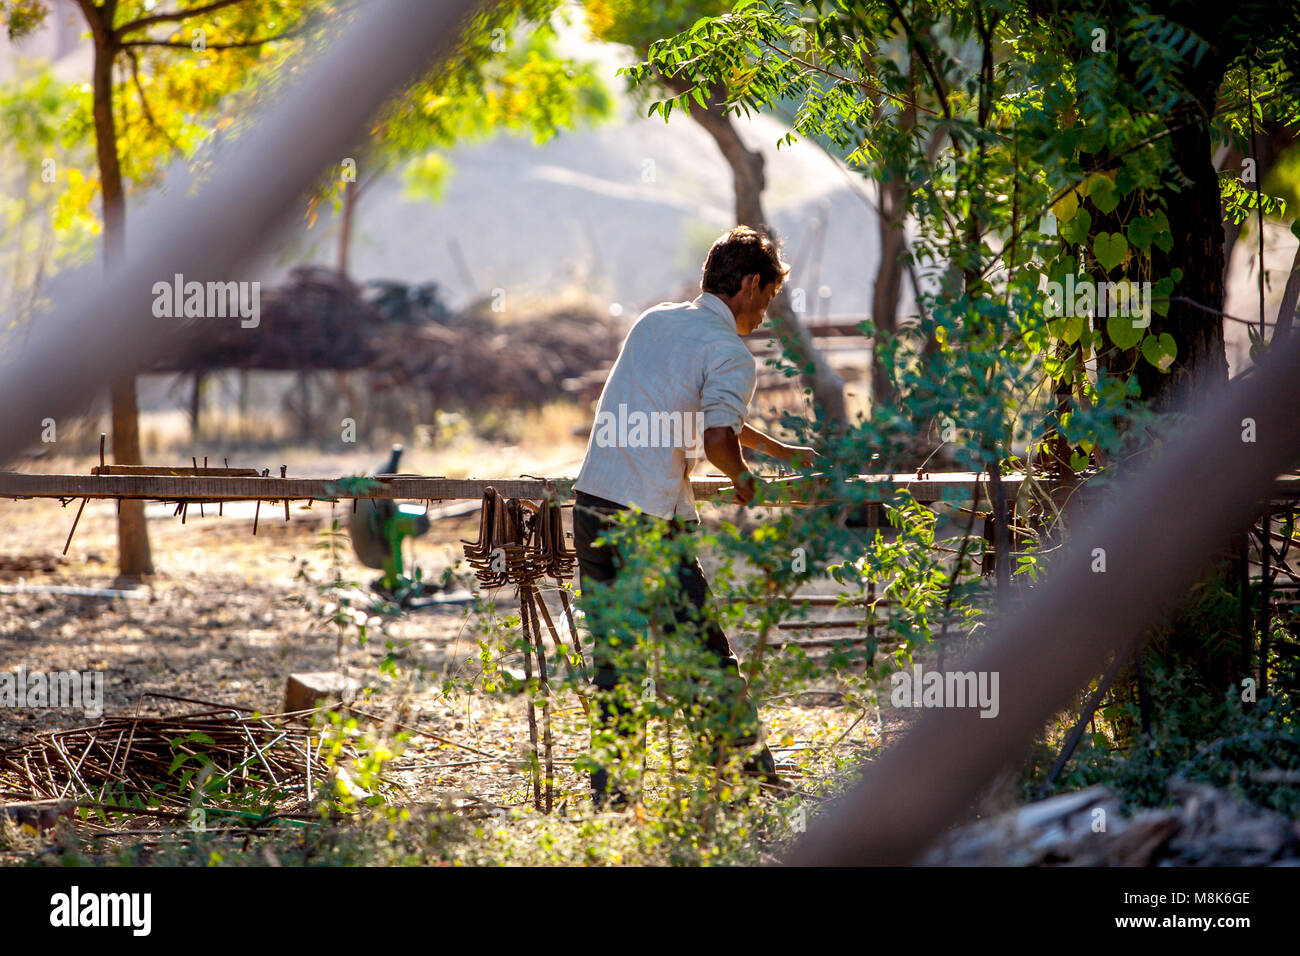 Un bel giovane uomo sta lavorando all' aperto nel villaggio indiano Nipal, piegatura di tondini di ferro durante la bella giornata di sole sotto gli alberi. La luce è golden caldo come Foto Stock